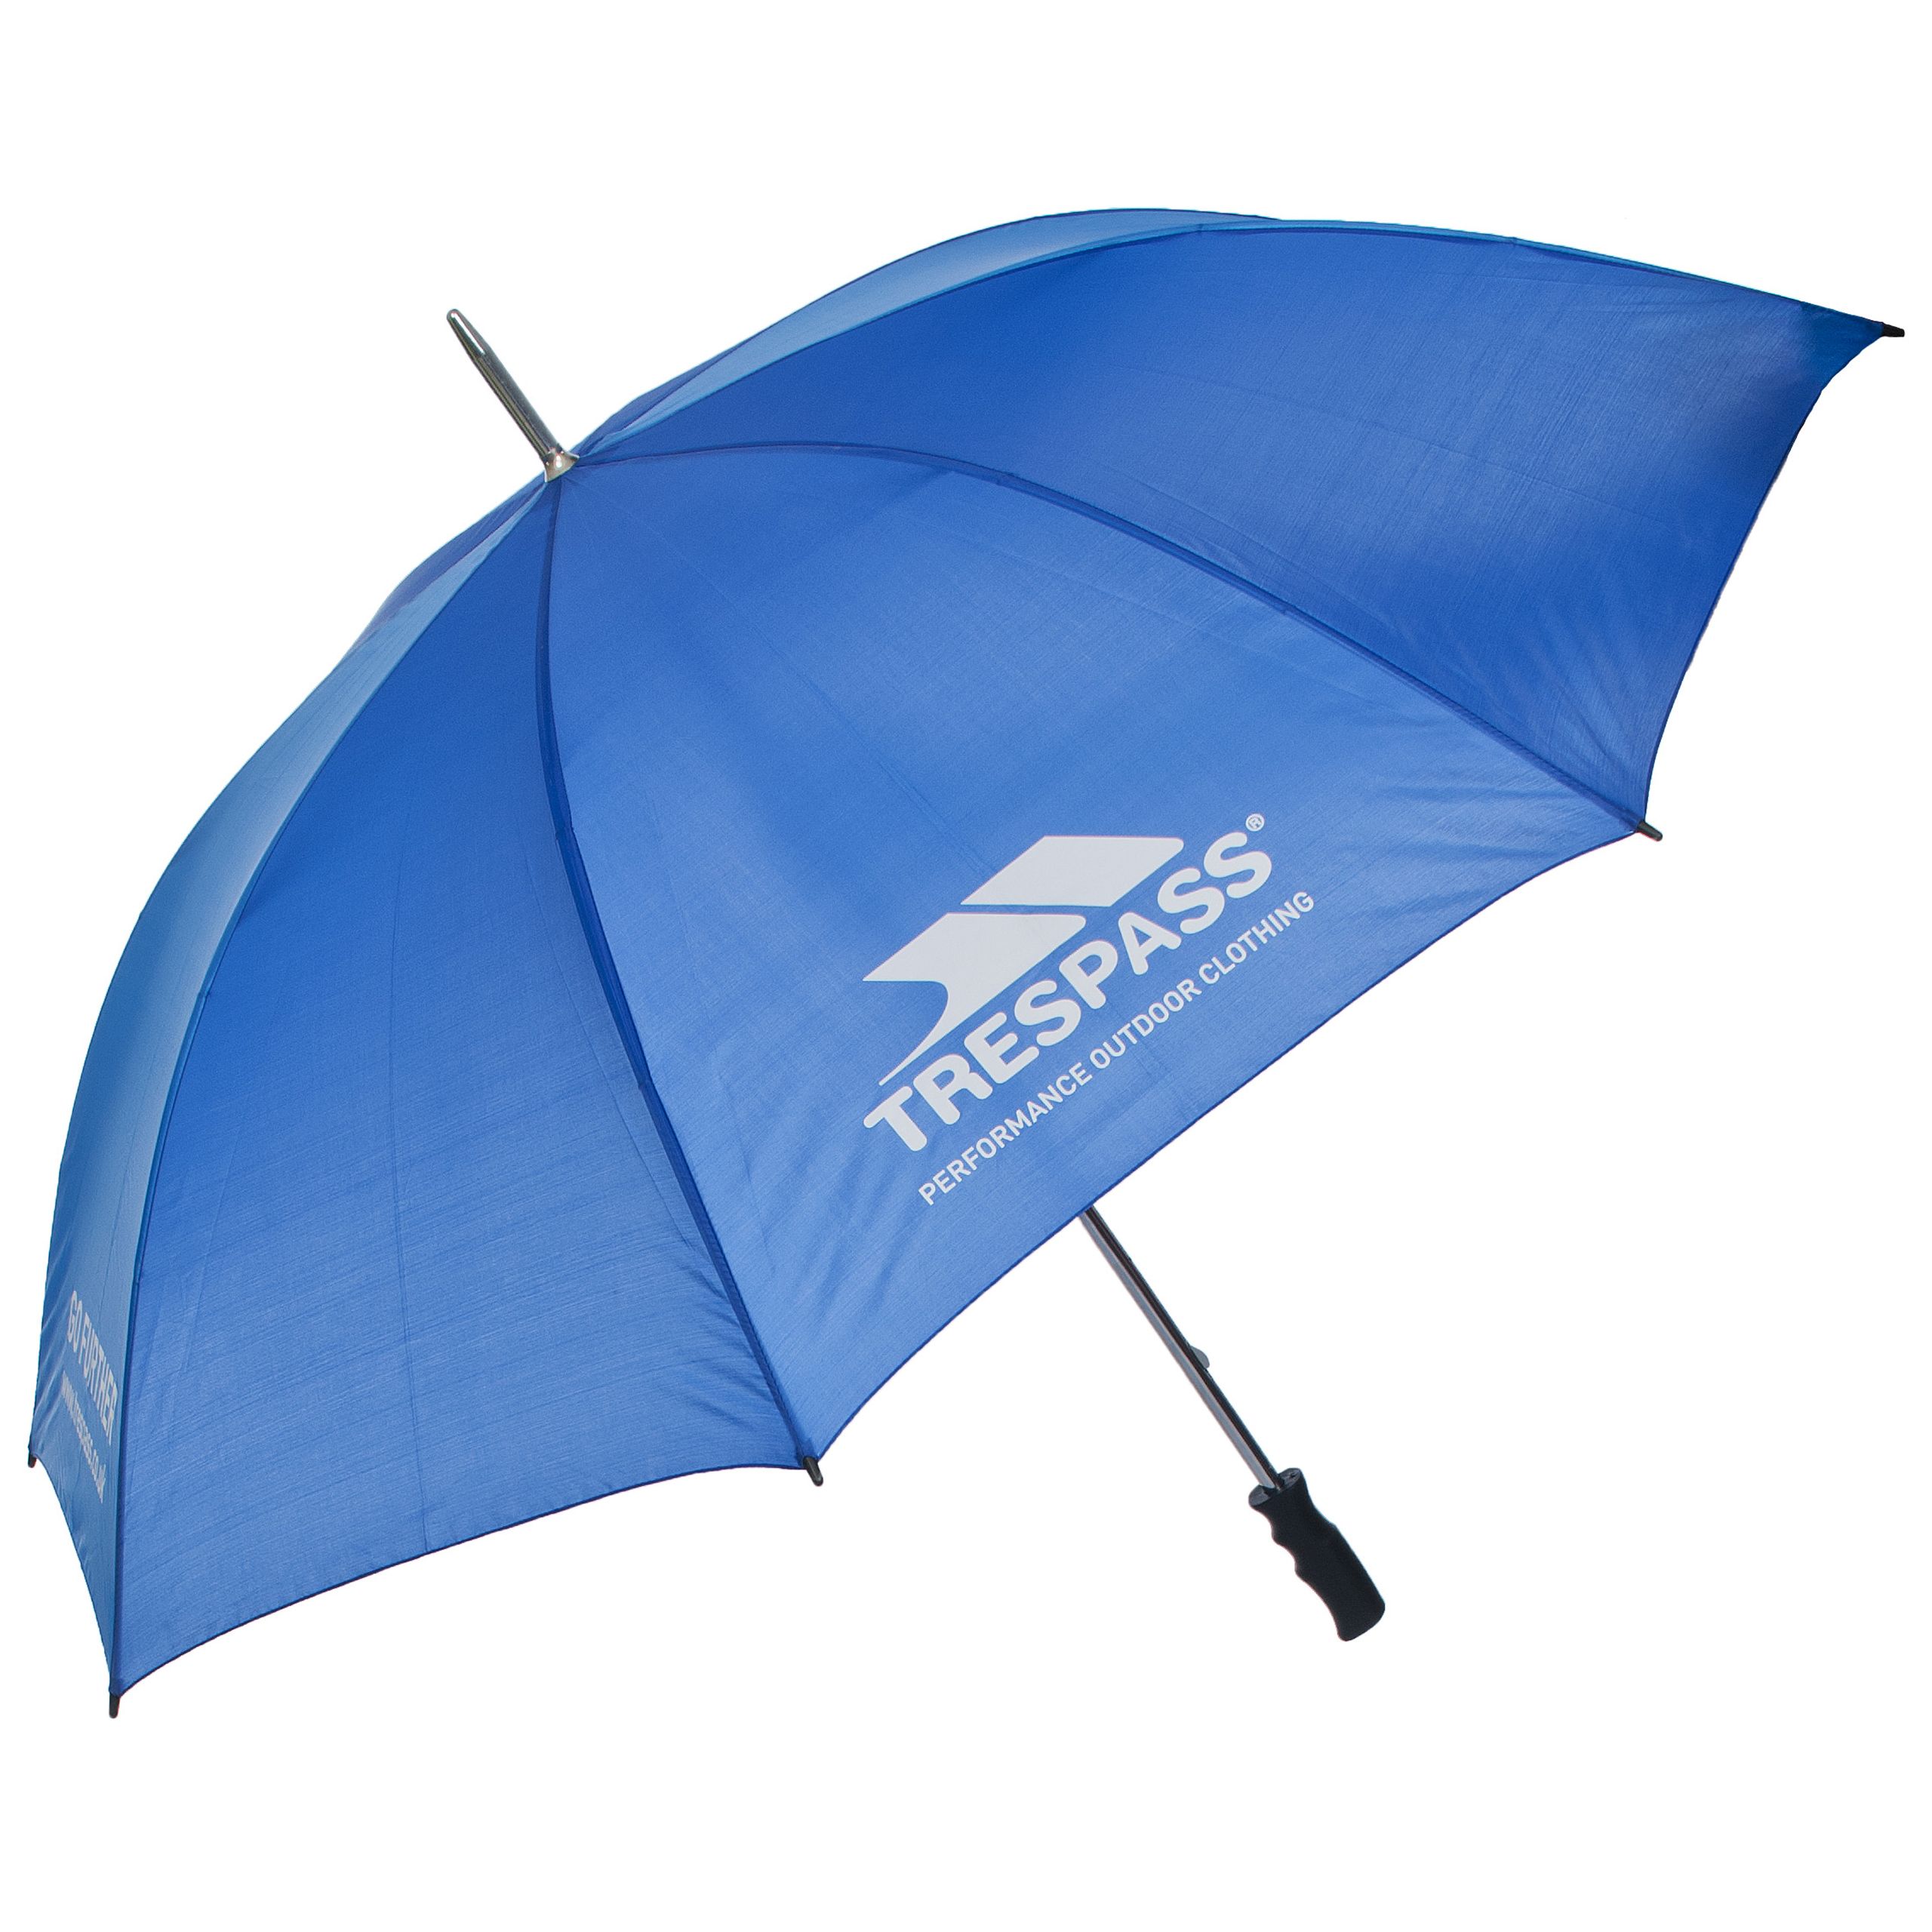 Blue Golf Umbrella